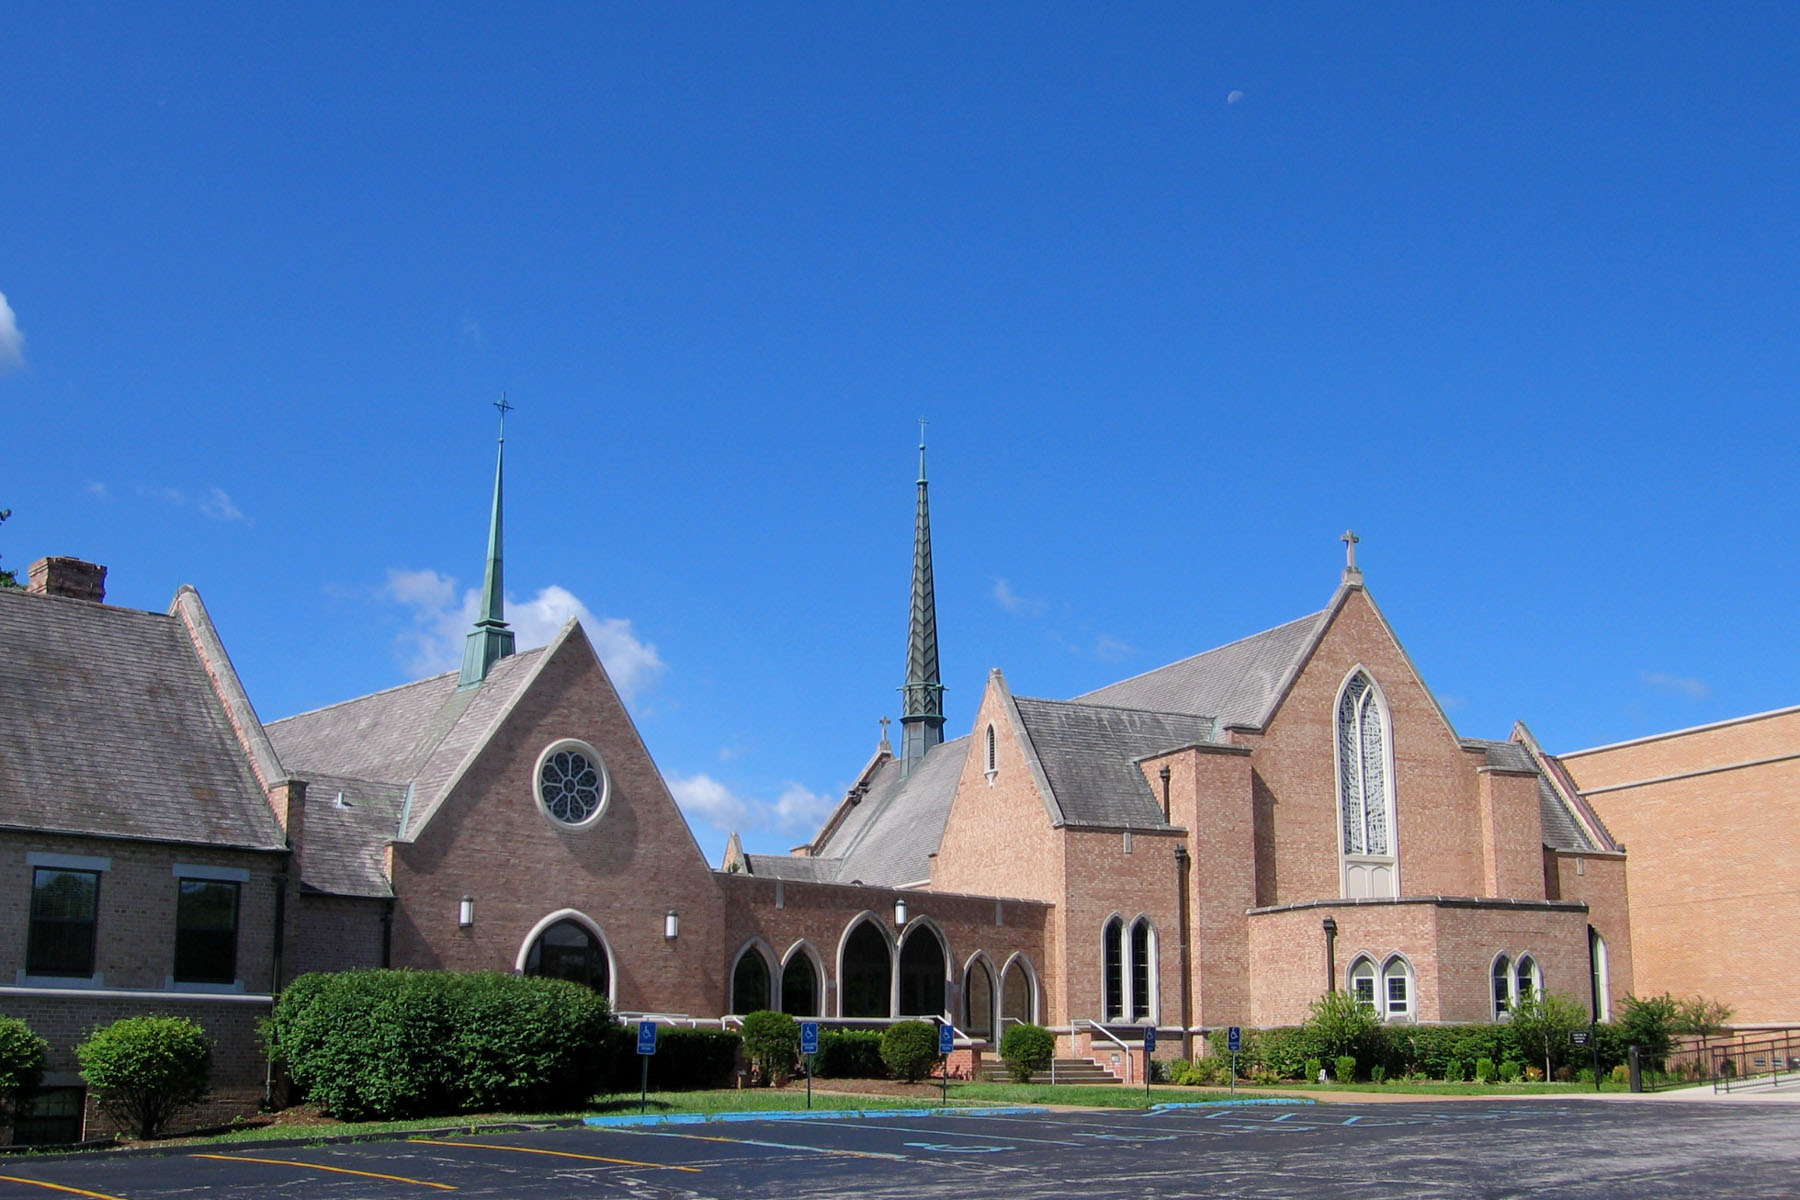 Bonhomme Presbyterian new sanctuary